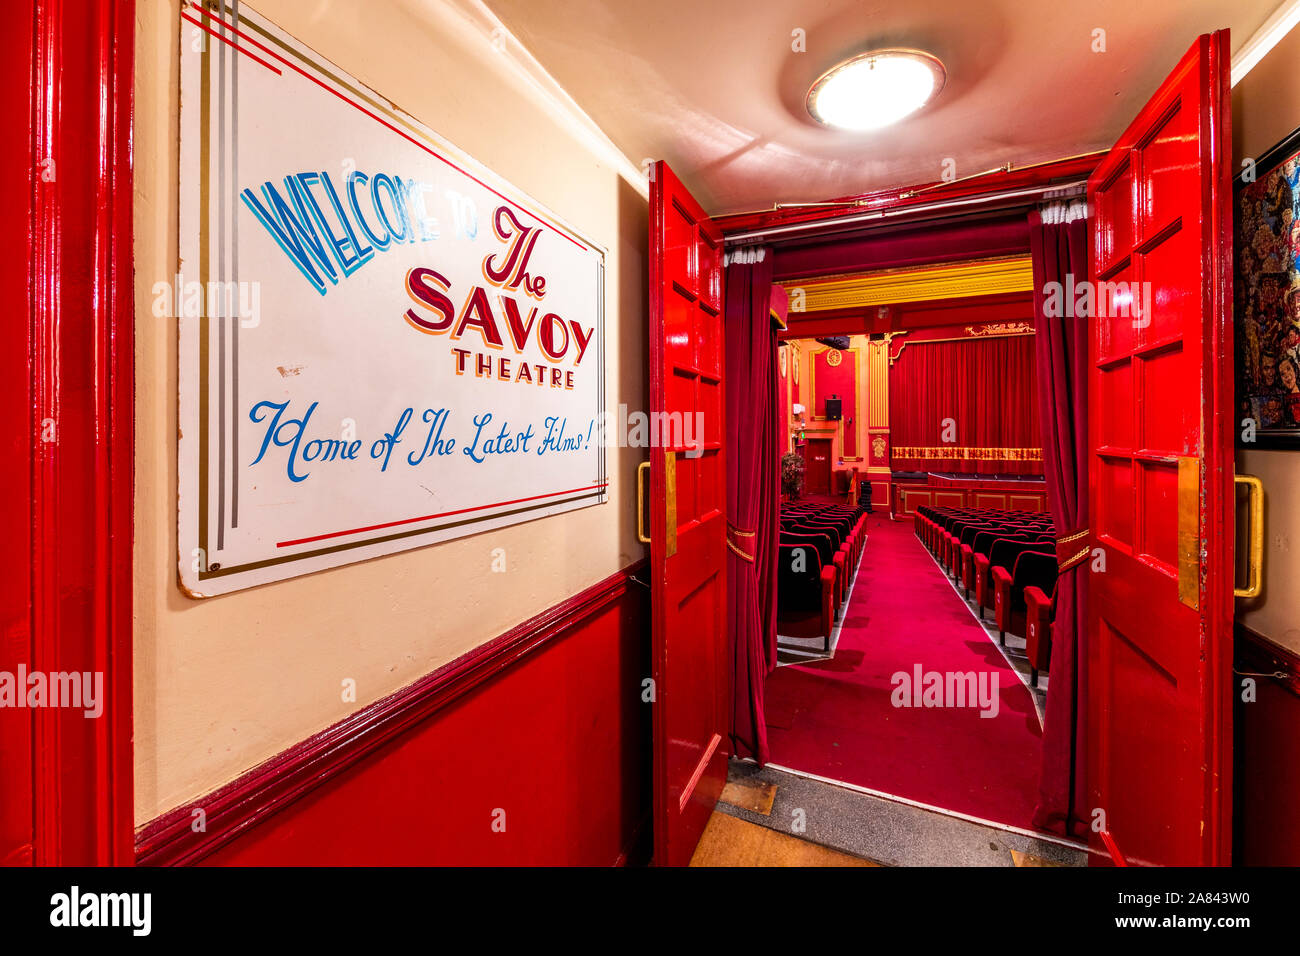 Savoy Theatre, une élève de 11e année inscrits ont voté 2019 lieu Théâtre de l'année dans le Welsh Hospitality Awards Banque D'Images